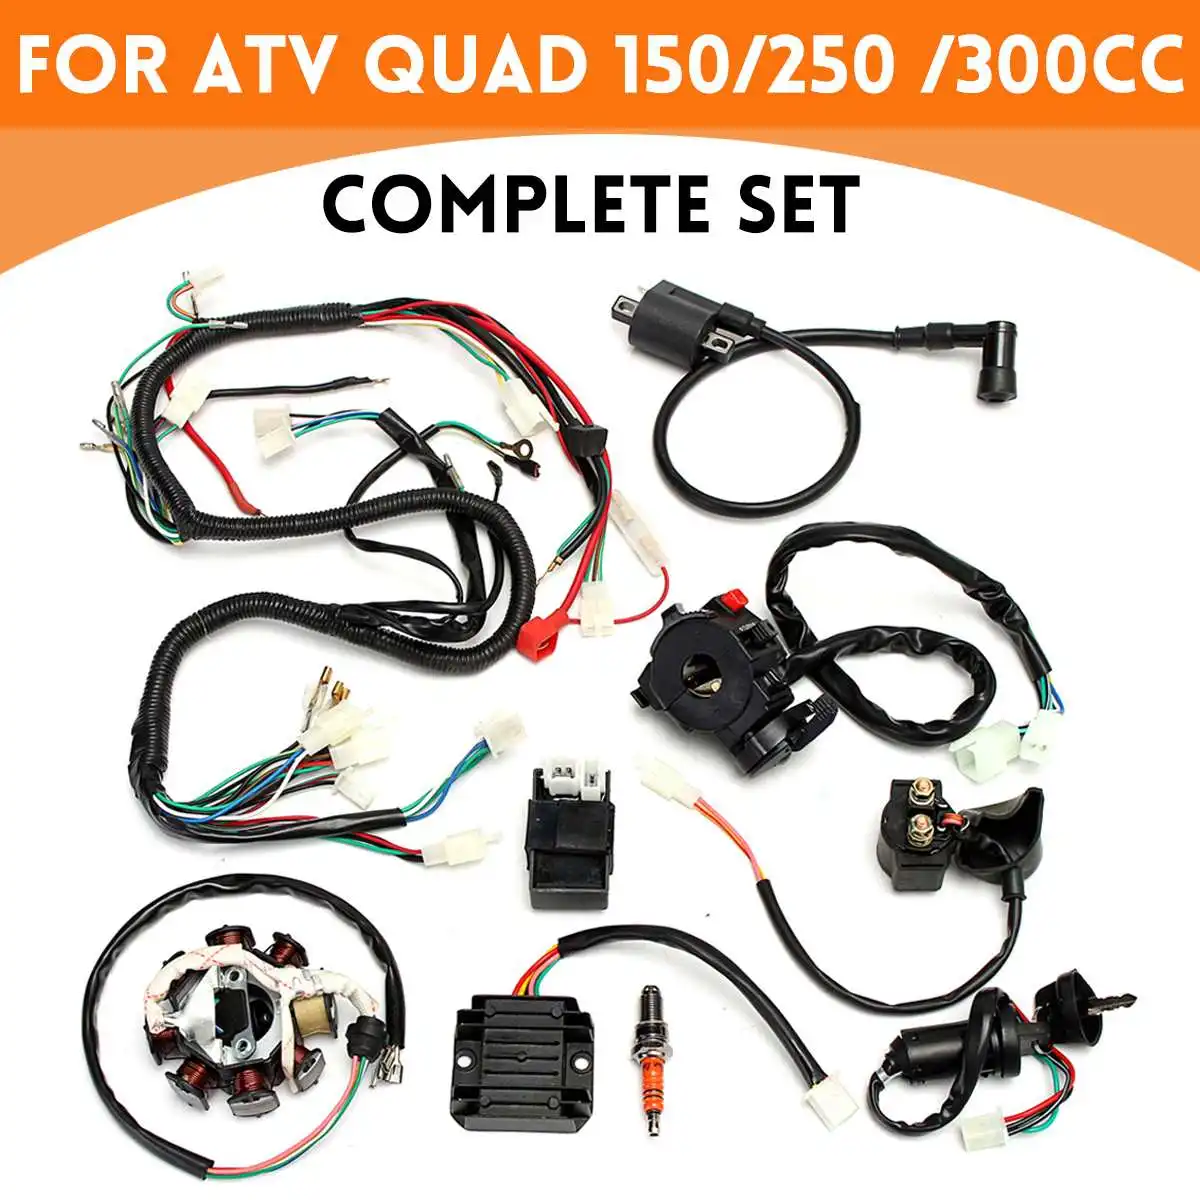 

Электроника для 125cc 250cc 300cc внедорожного велосипеда ATV QUAD электробритва CDI проводной жгут статор набор электропроводки